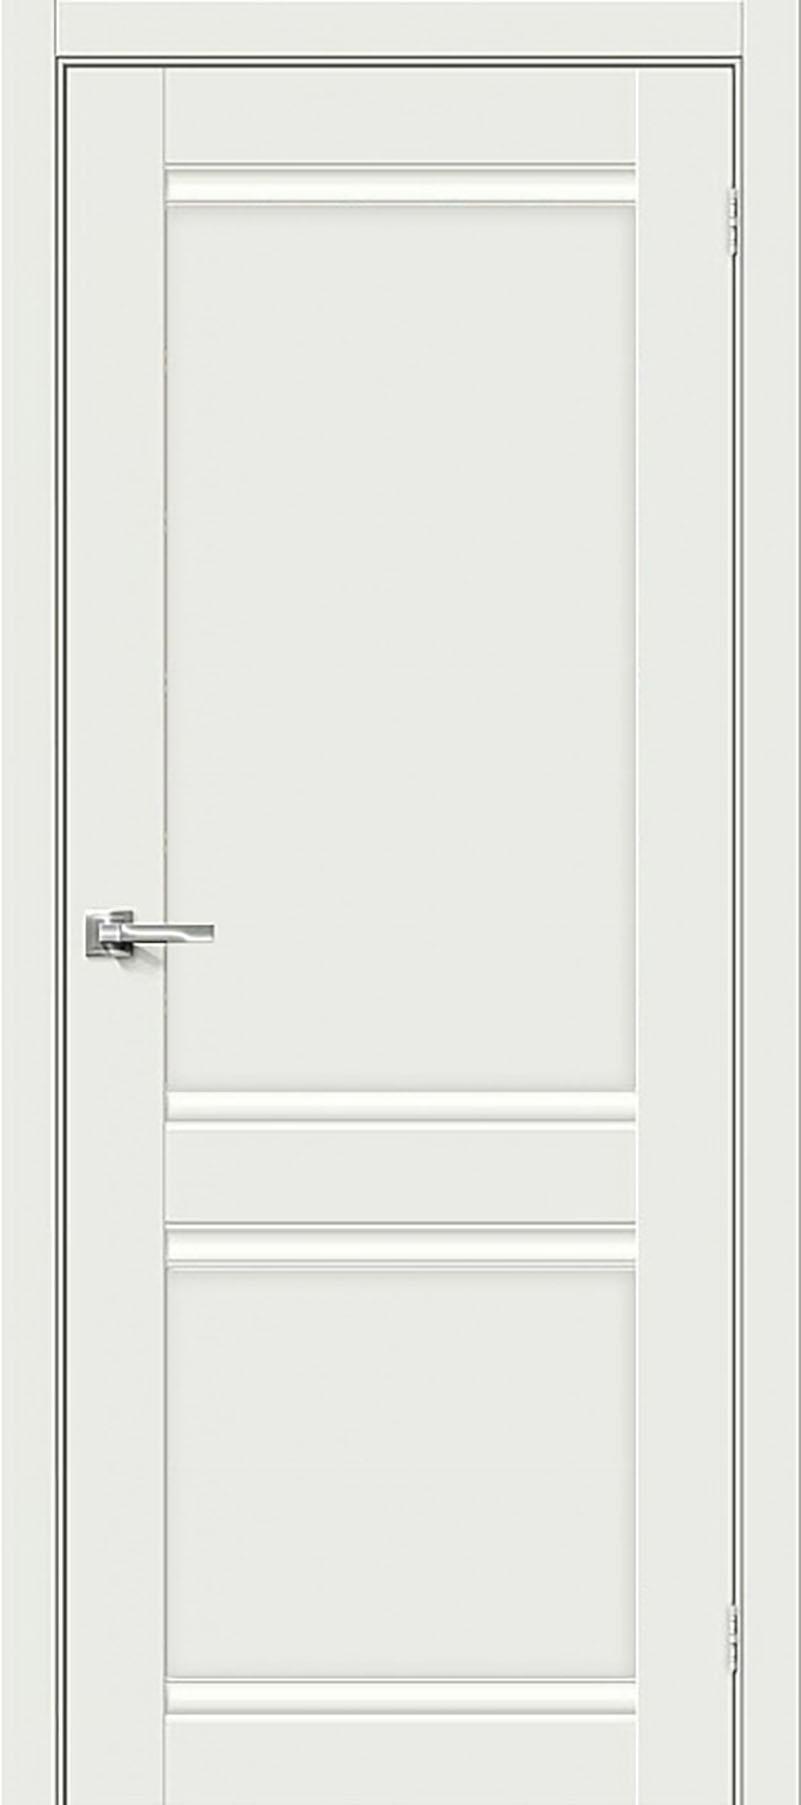 90910799 Межкомнатная дверь Парма 1211 глухая без замка и петель в комплекте 200x60см белый STLM-0420329 UBERTURE